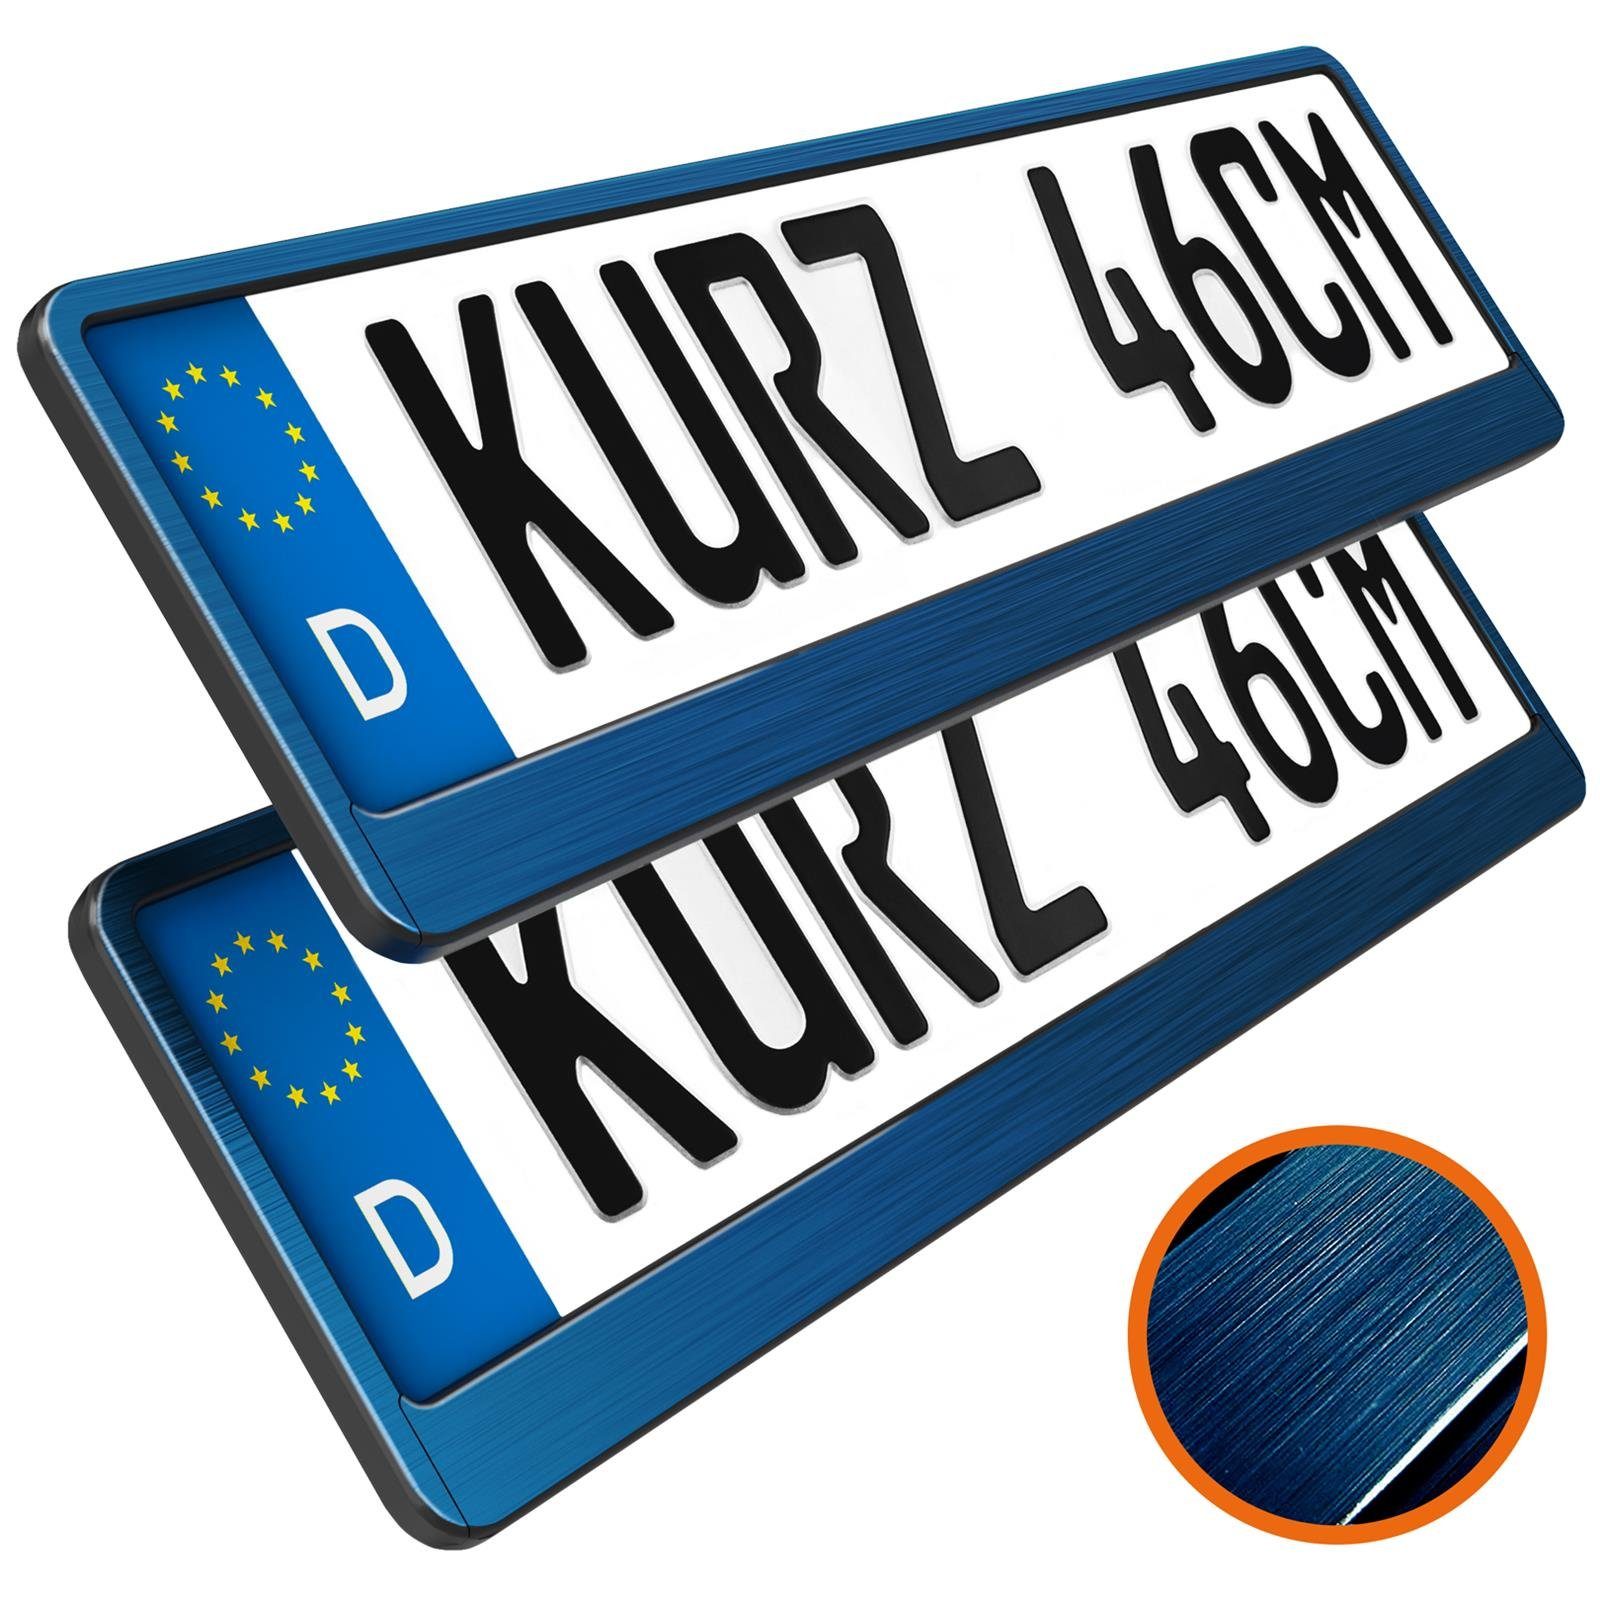 L & P Car Design Kennzeichenhalter für Auto 46 cm in Blau Chrom gebürstet für kurze Kennzeichen, (2 Stück)